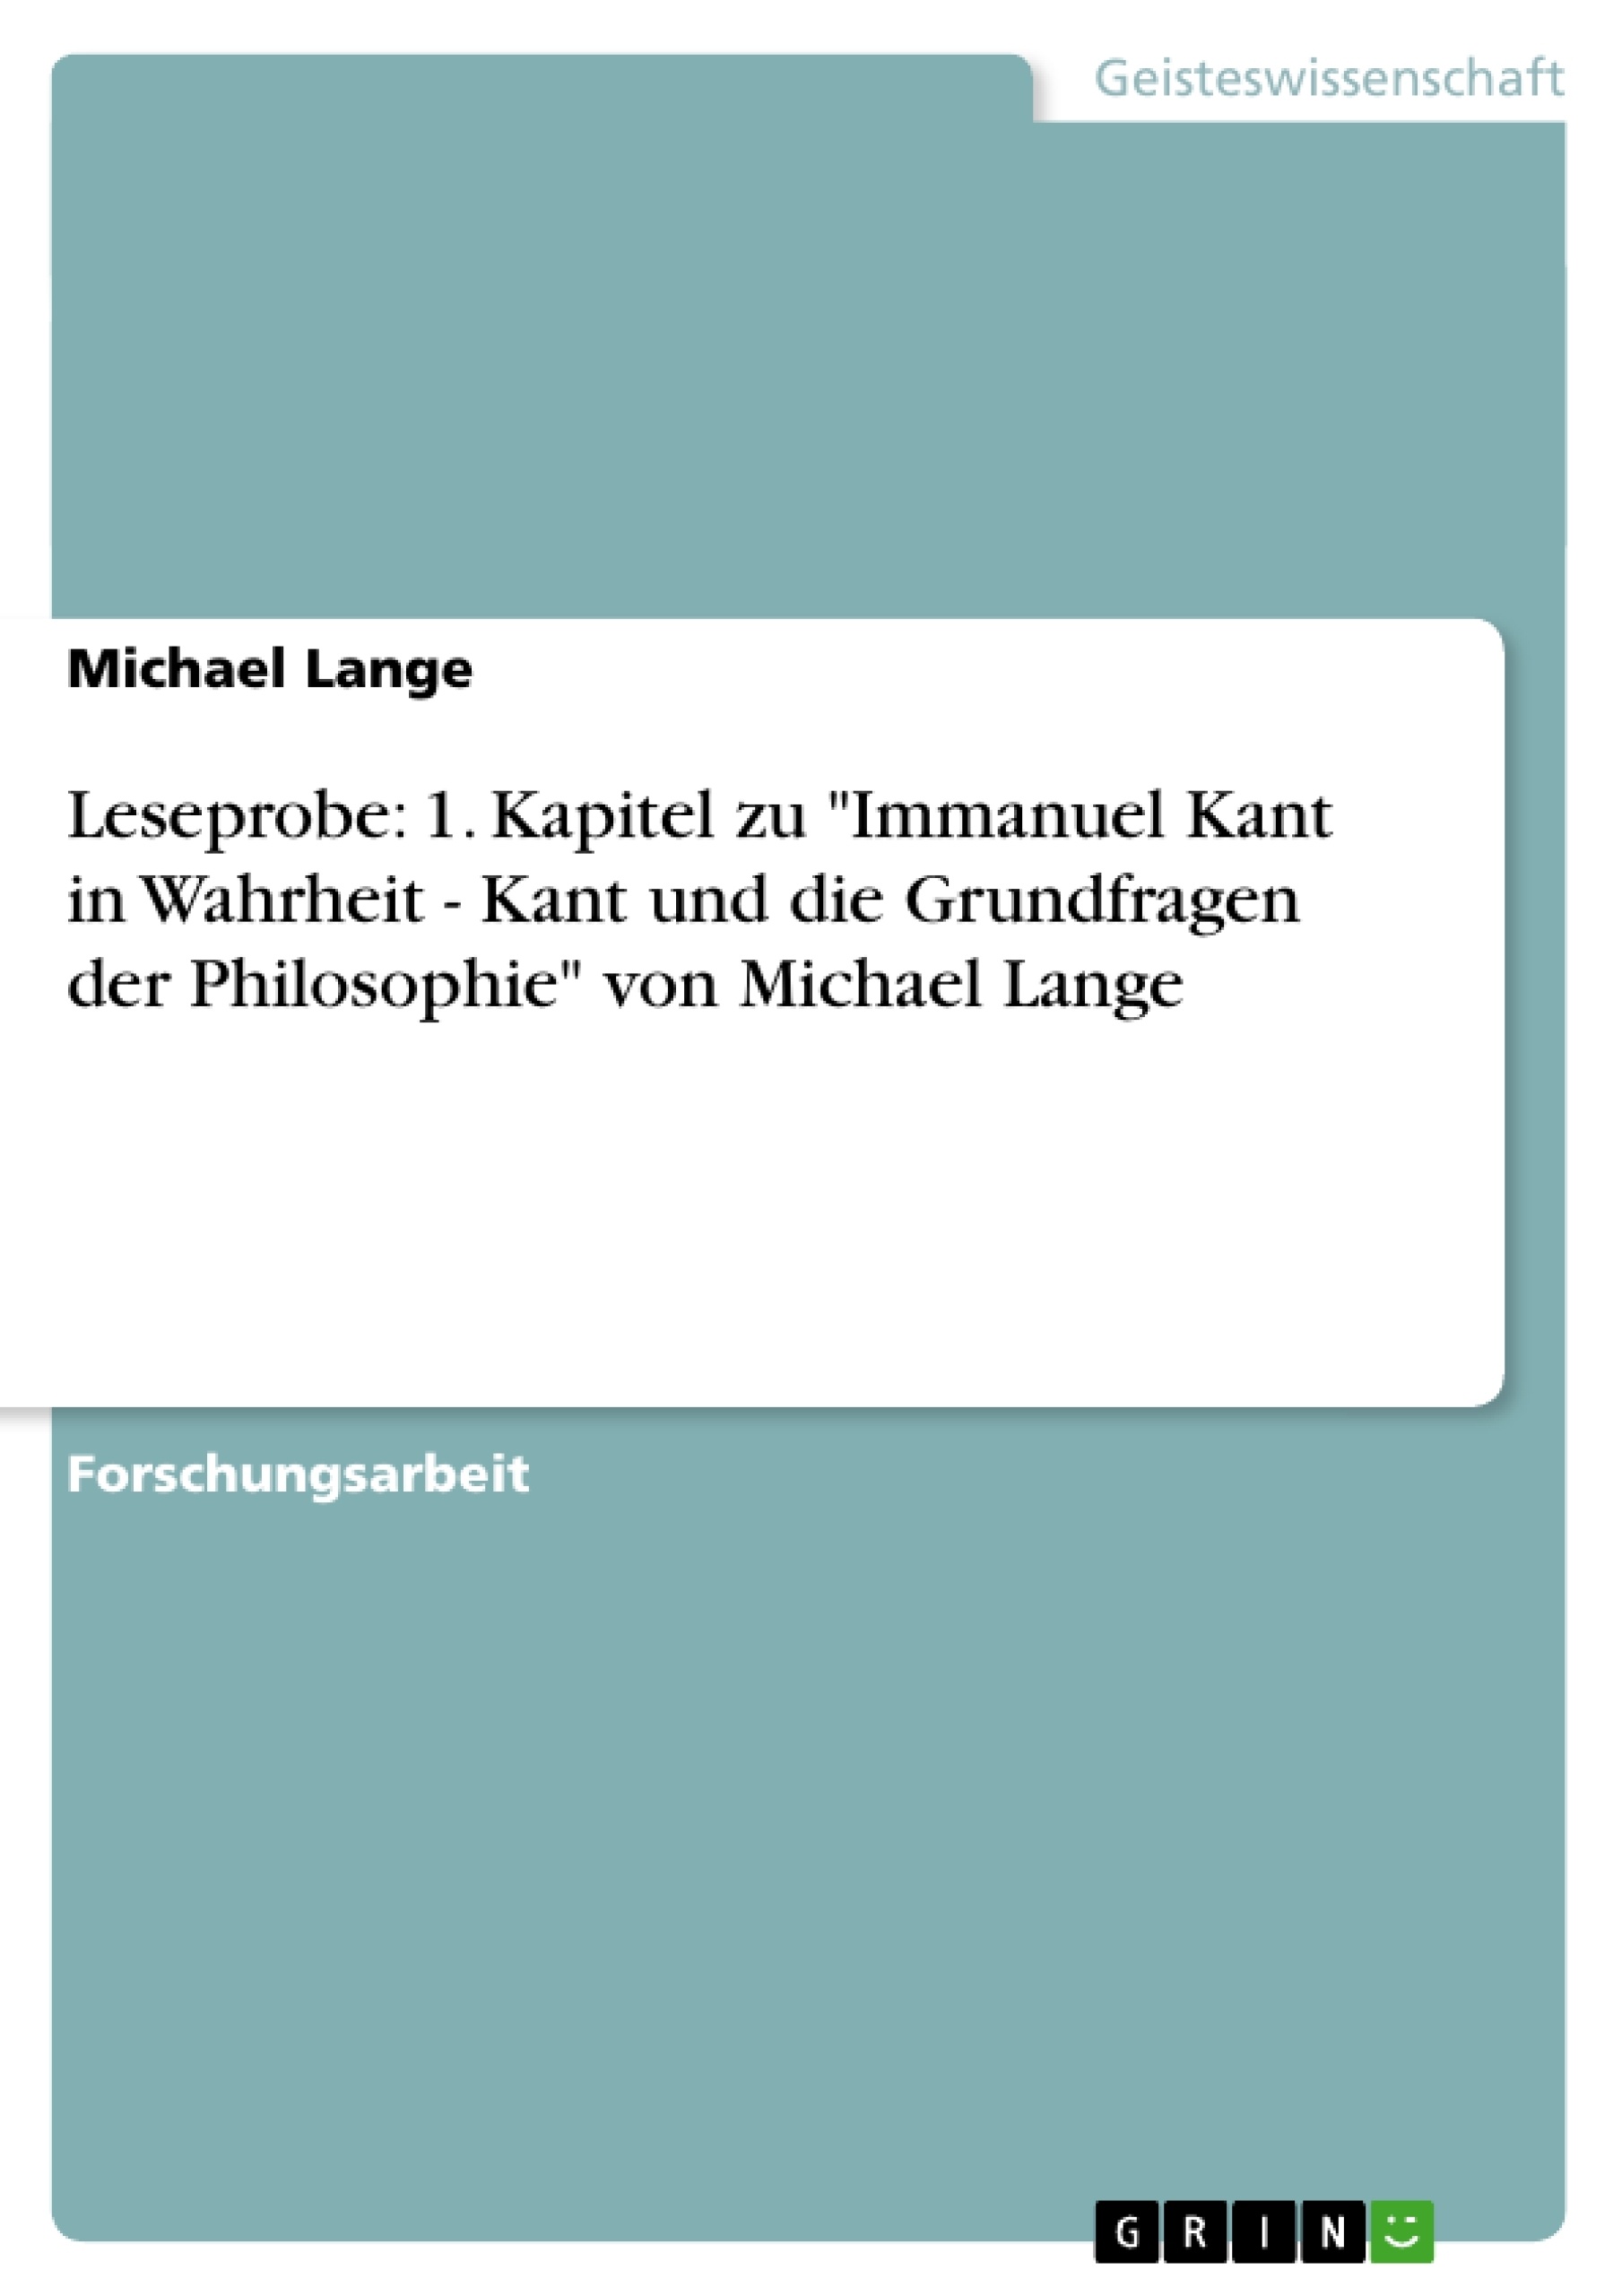 Title: Leseprobe: 1. Kapitel zu "Immanuel Kant in Wahrheit - Kant und die Grundfragen der Philosophie" von Michael Lange